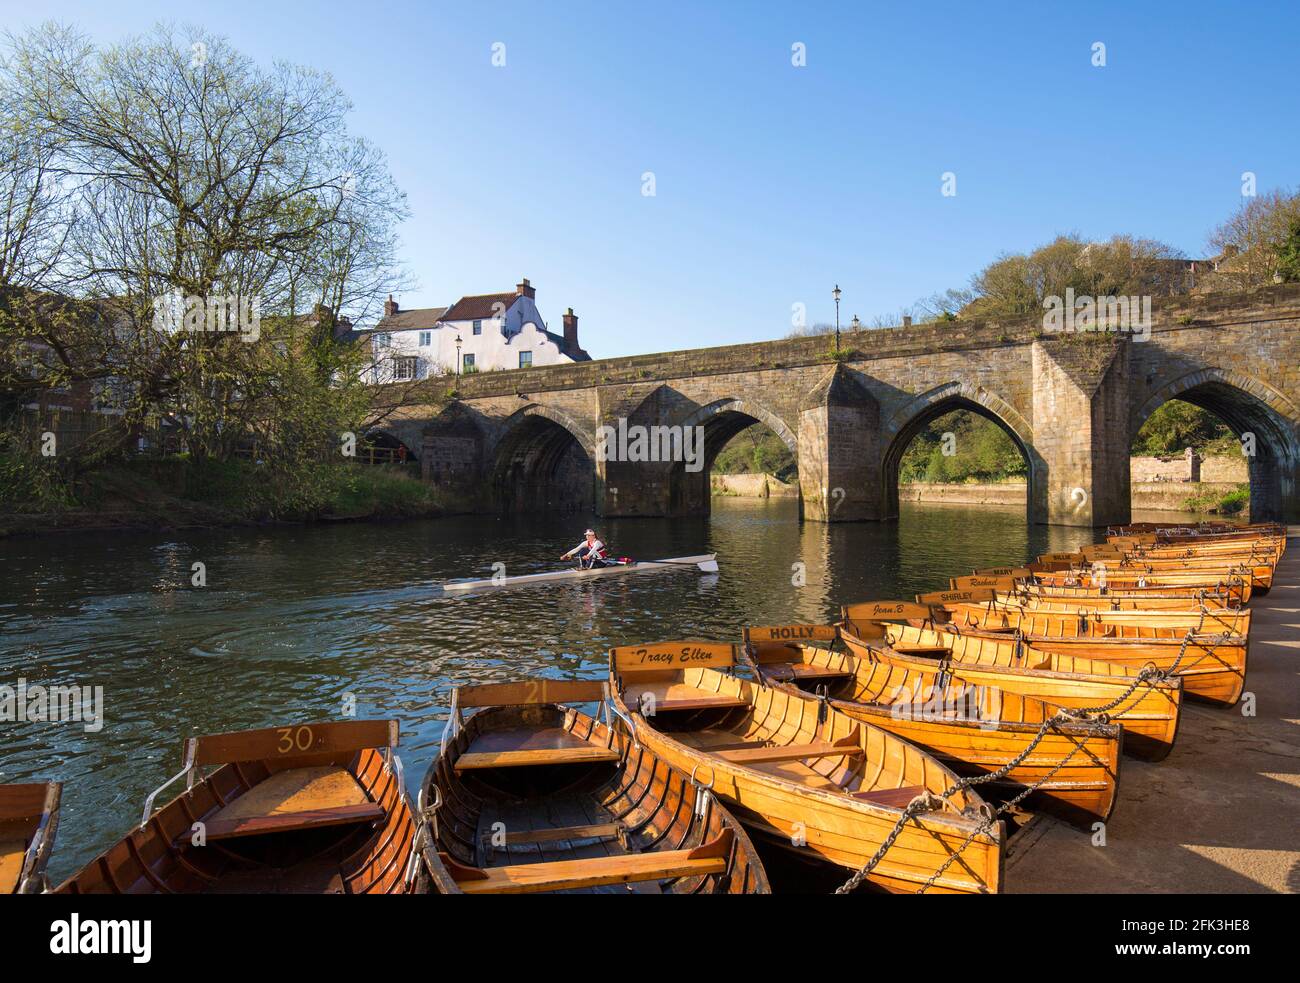 Durham, contea di Durham, Inghilterra. Barche a remi ormeggiate fianco a fianco sul fiume Wear sopra il ponte Elvet, vogatore solitario che si dirige a valle. Foto Stock